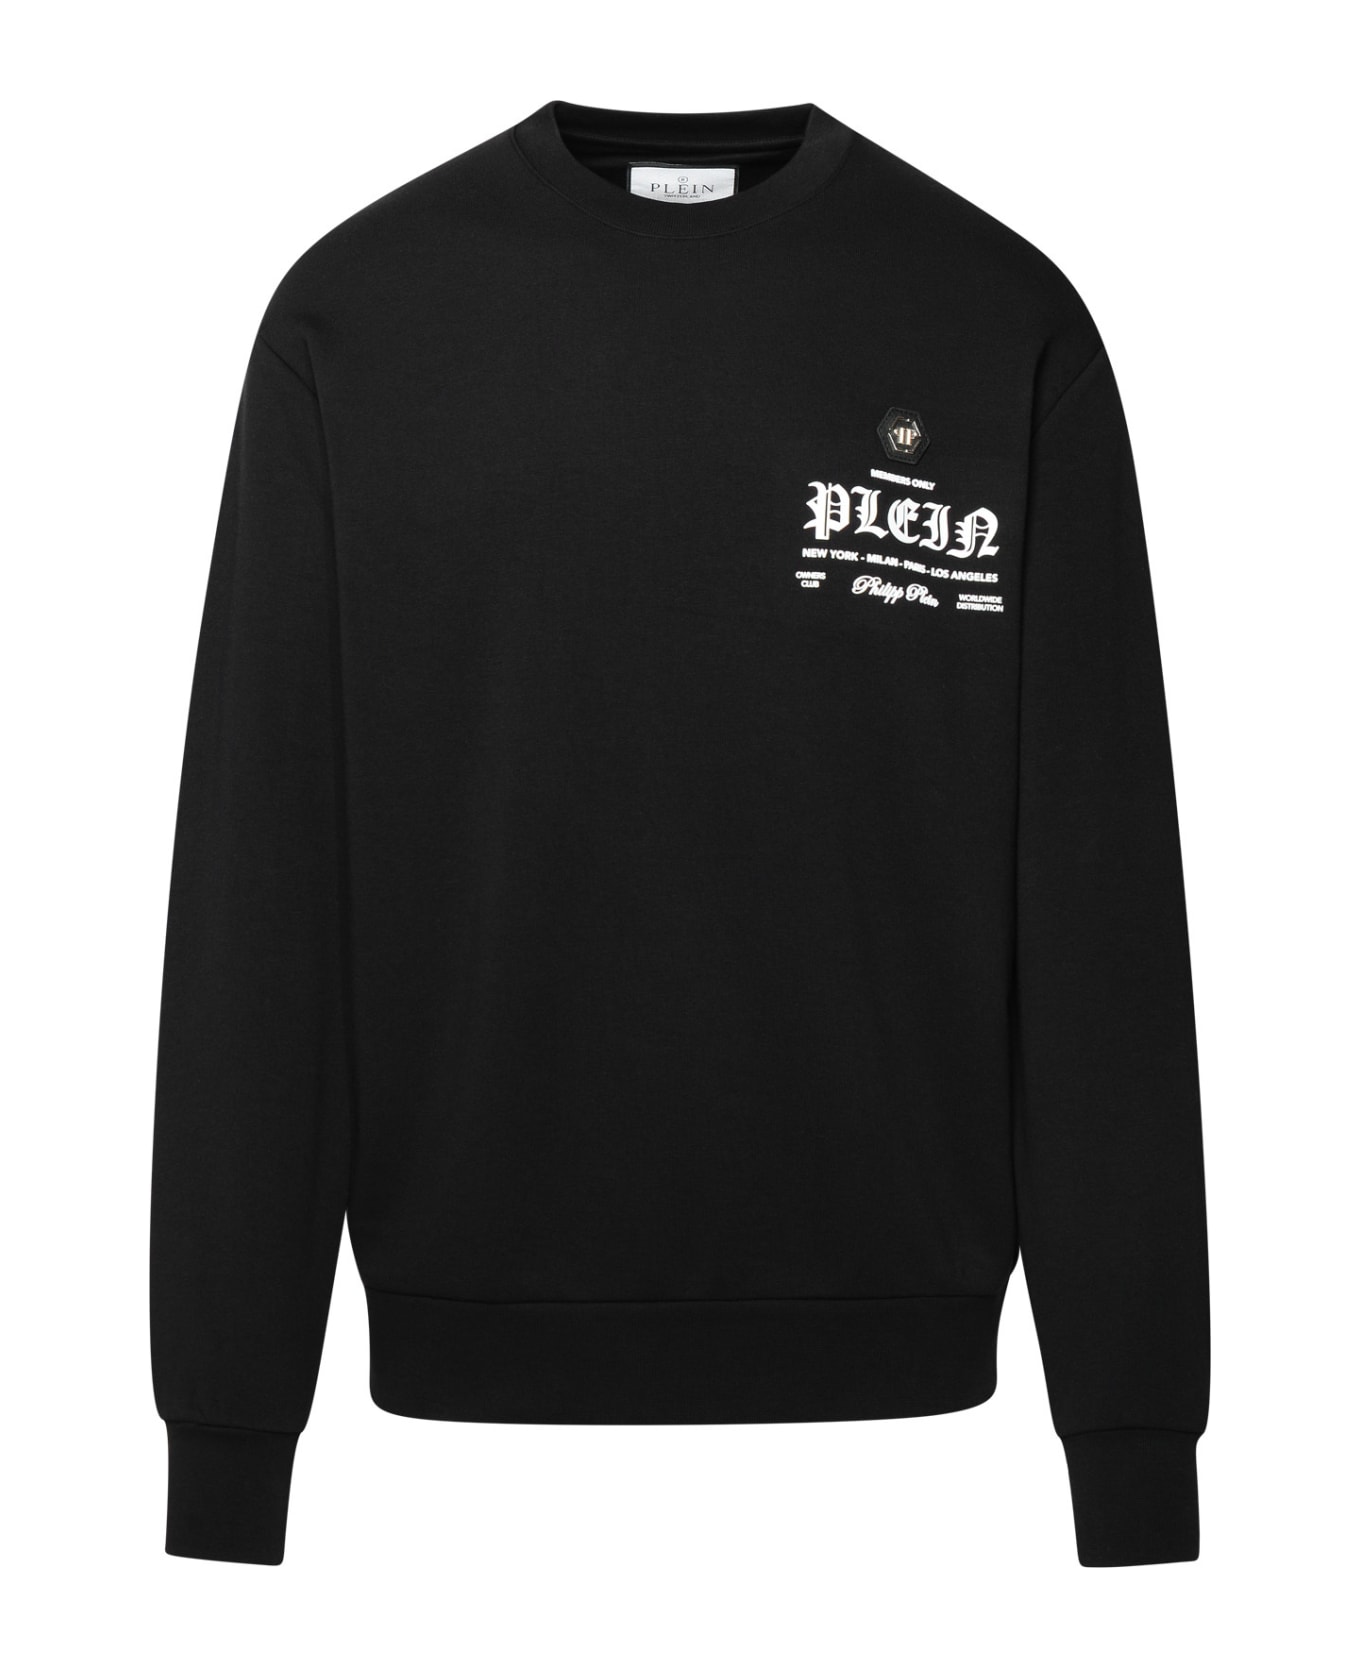 Philipp Plein Black Cotton Blend Sweatshirt - Nero